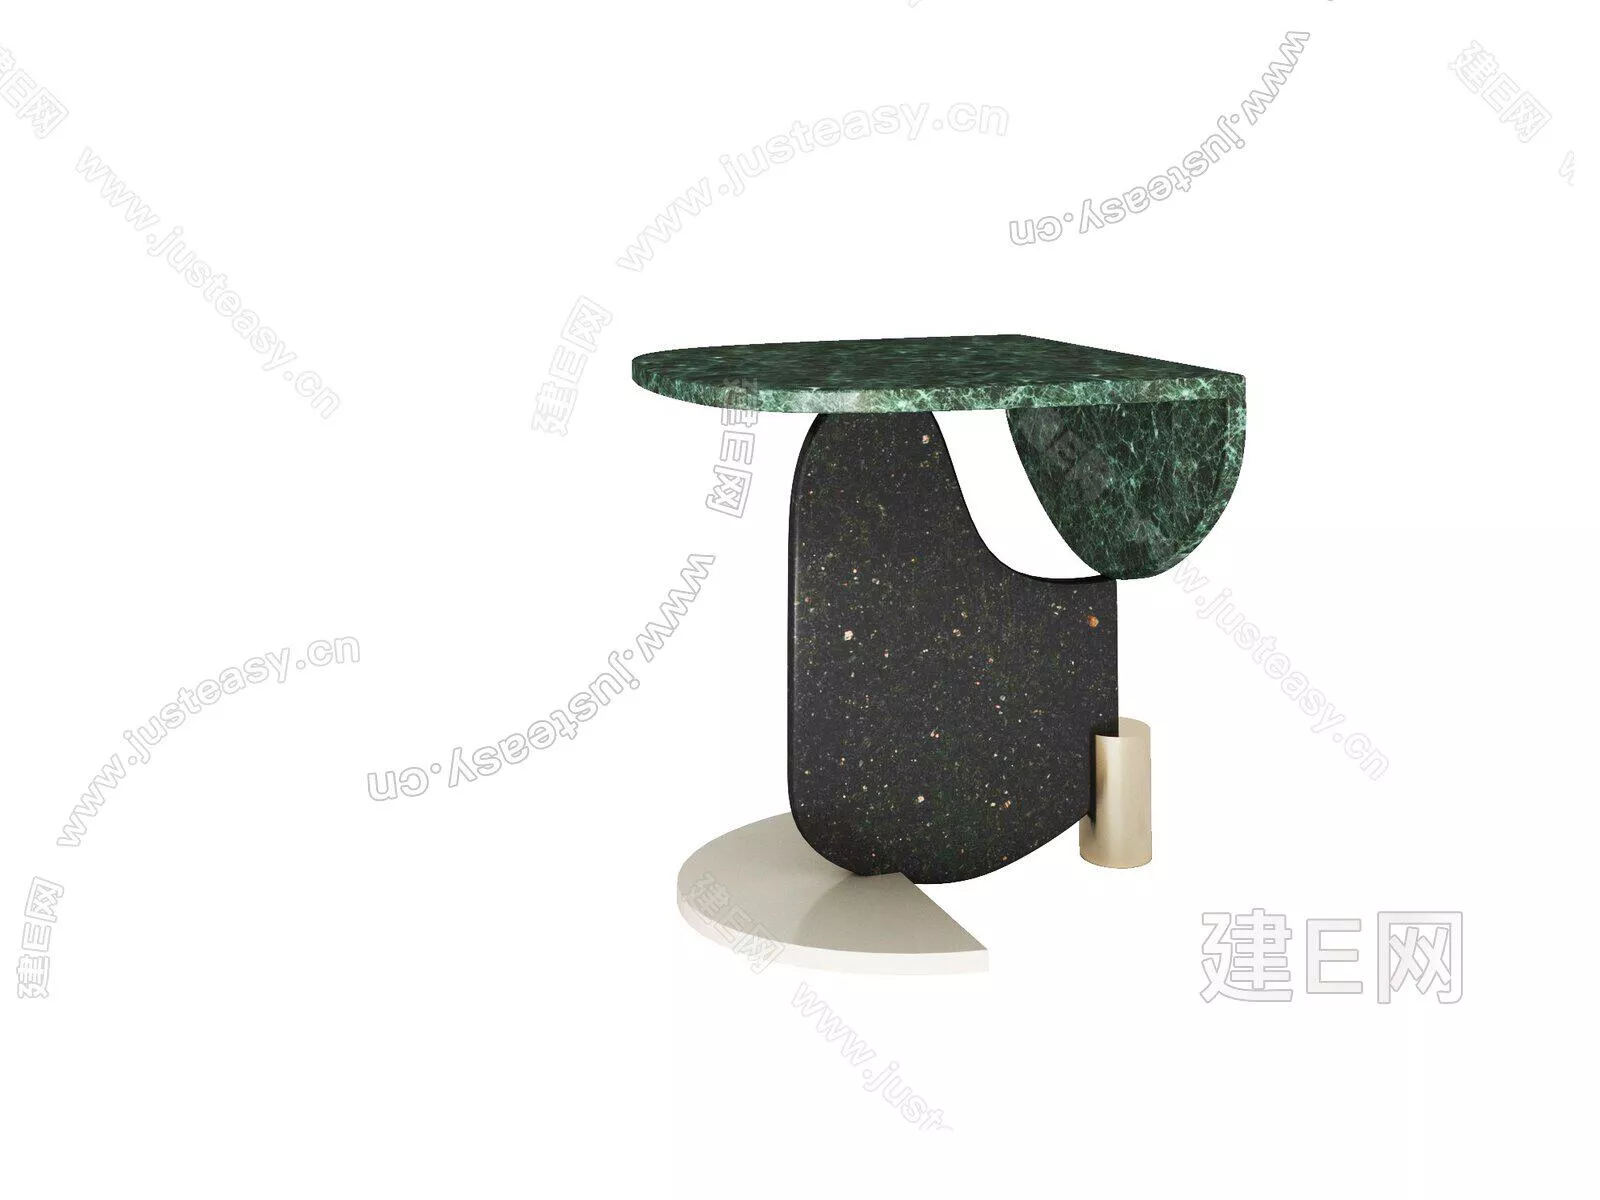 NORDIC SIDE TABLE - SKETCHUP 3D MODEL - ENSCAPE - 104941659